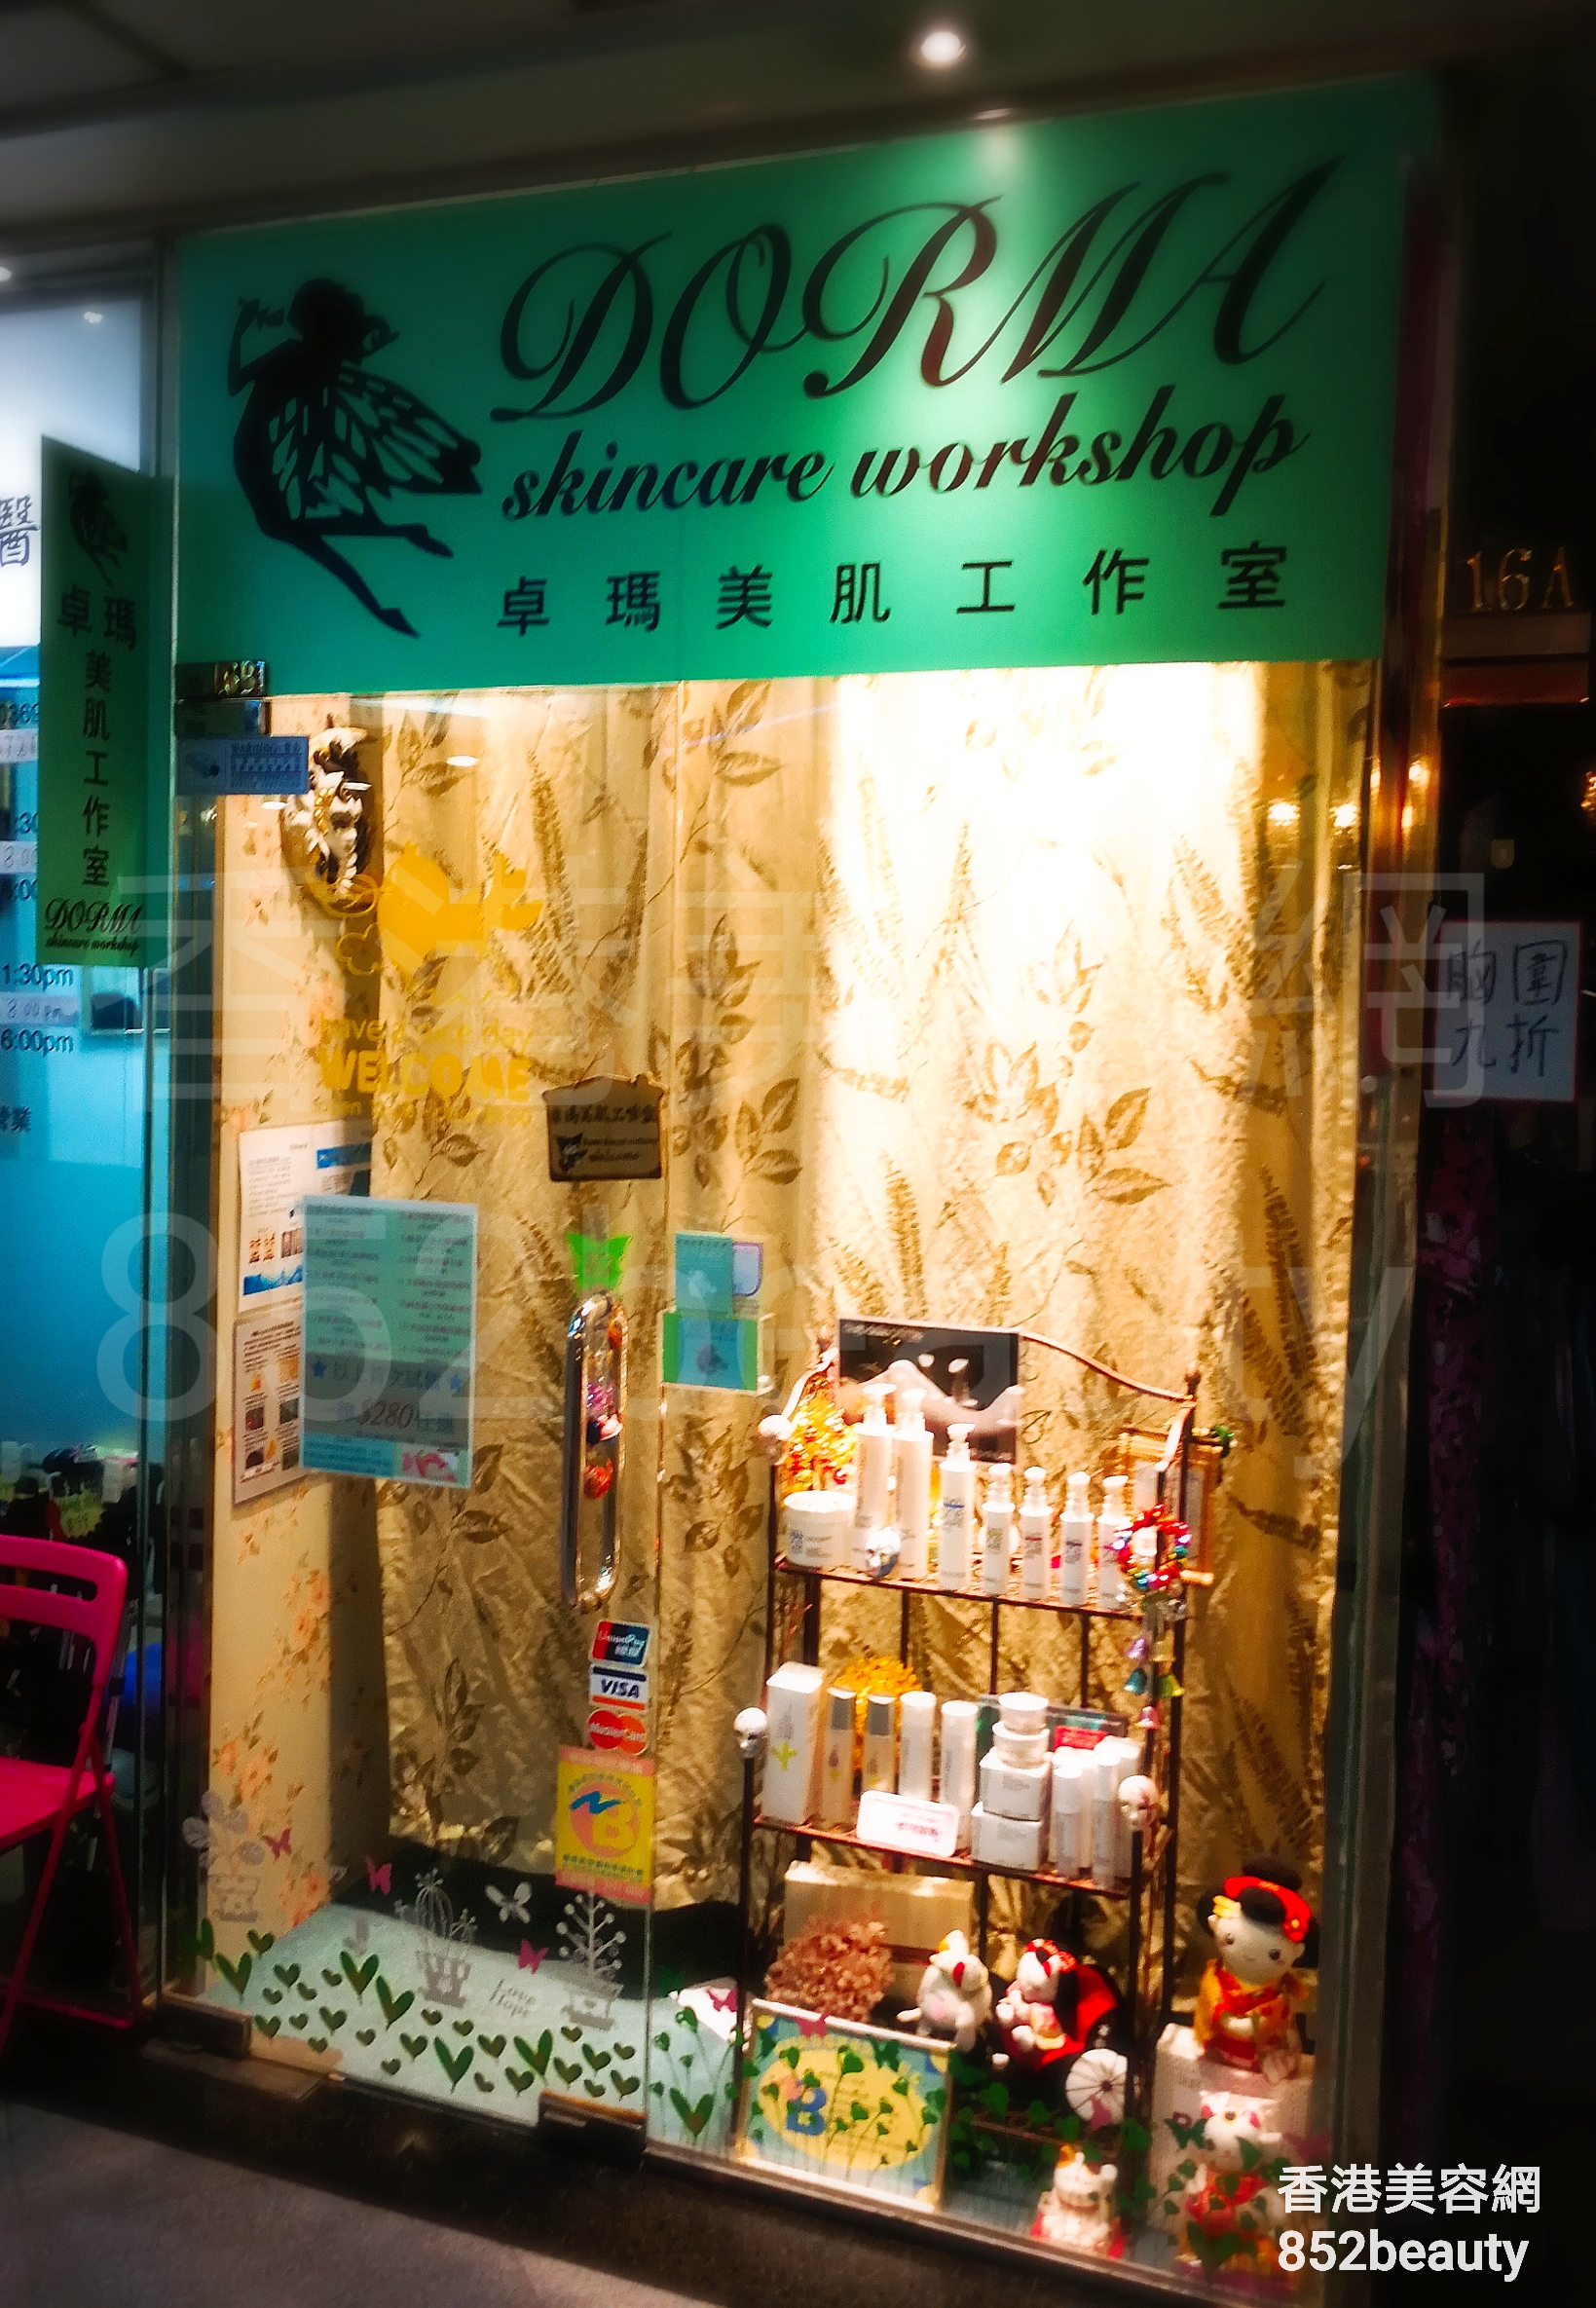 香港美容網 Hong Kong Beauty Salon 美容院 / 美容師: 卓瑪美肌工作室